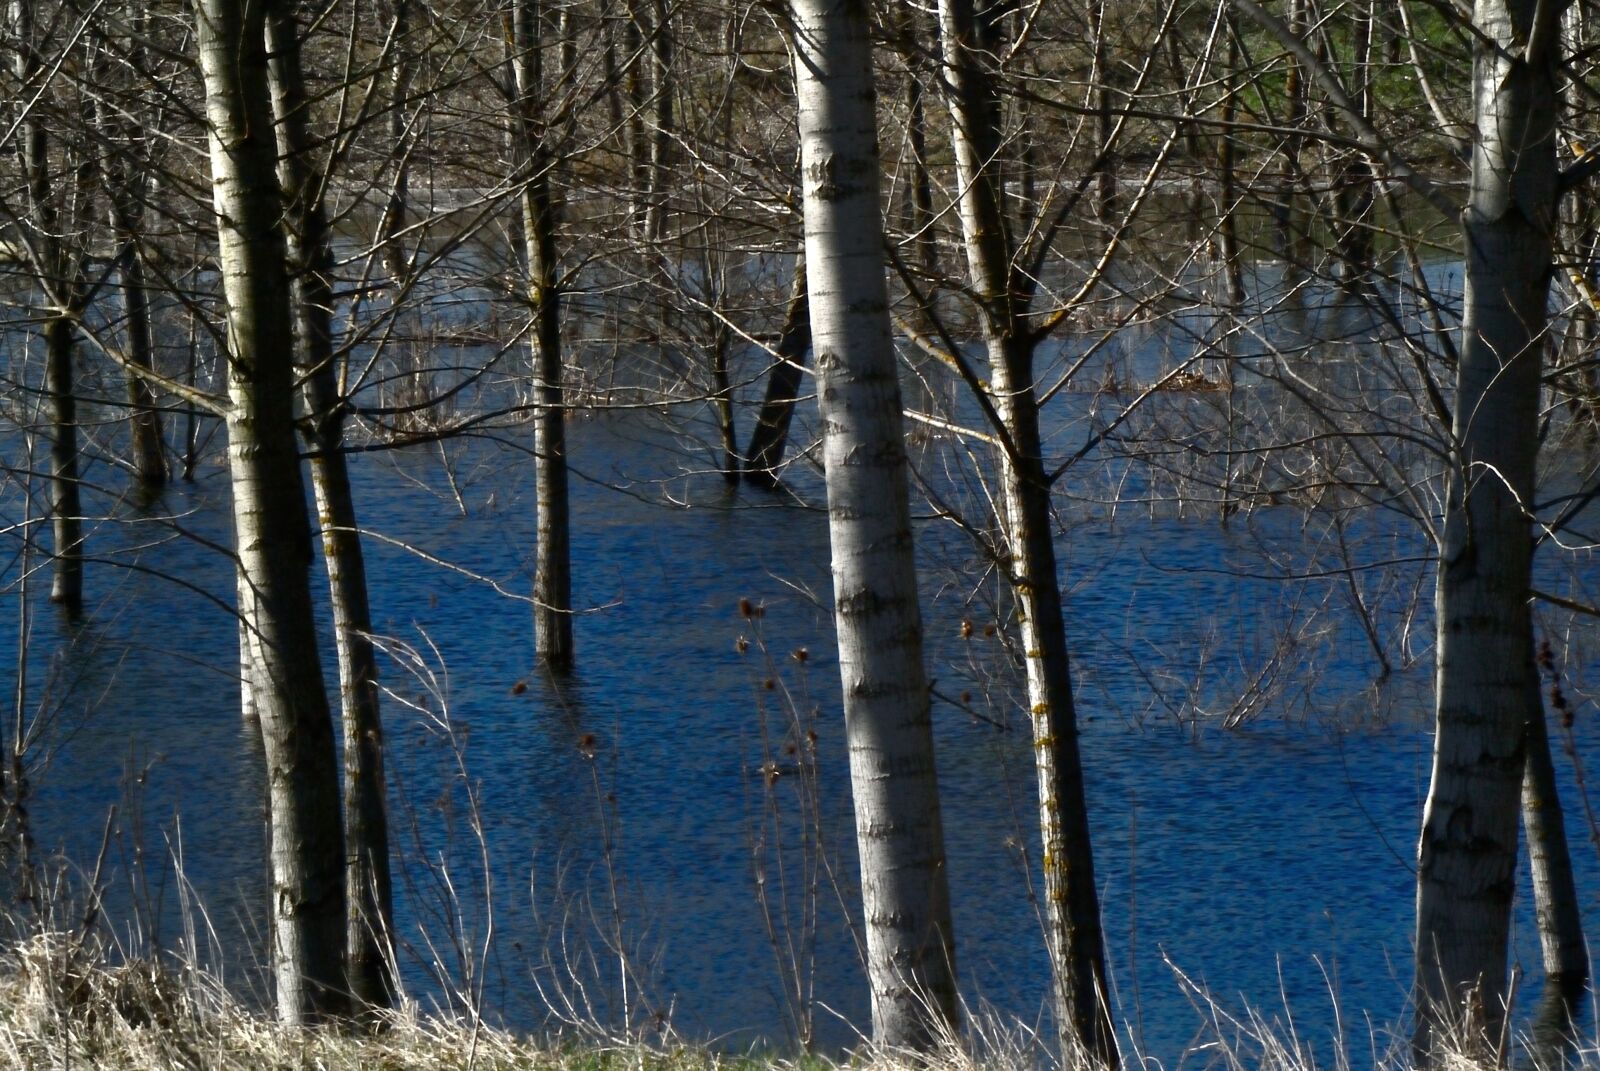 Nikon 1 V1 sample photo. Water, trees, tree photography